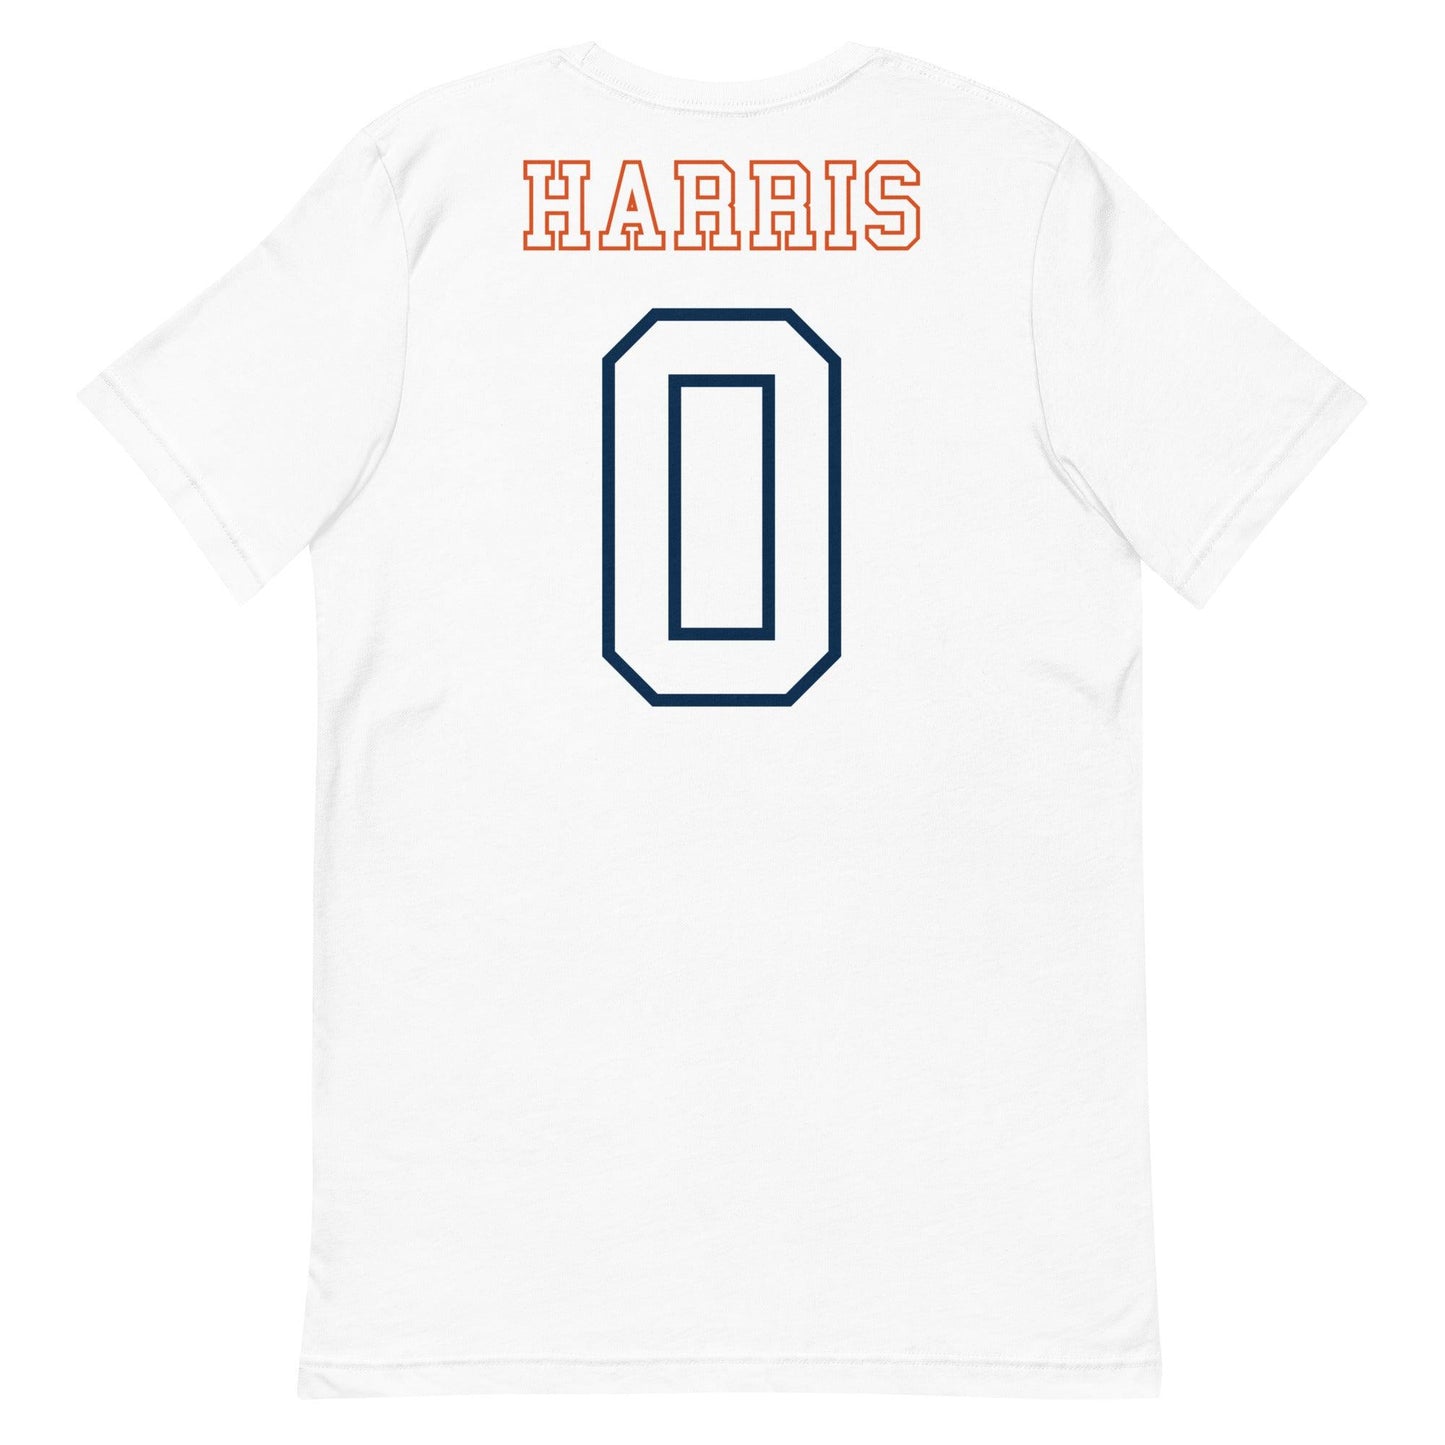 Frank Harris "Jersey" t-shirt - Fan Arch